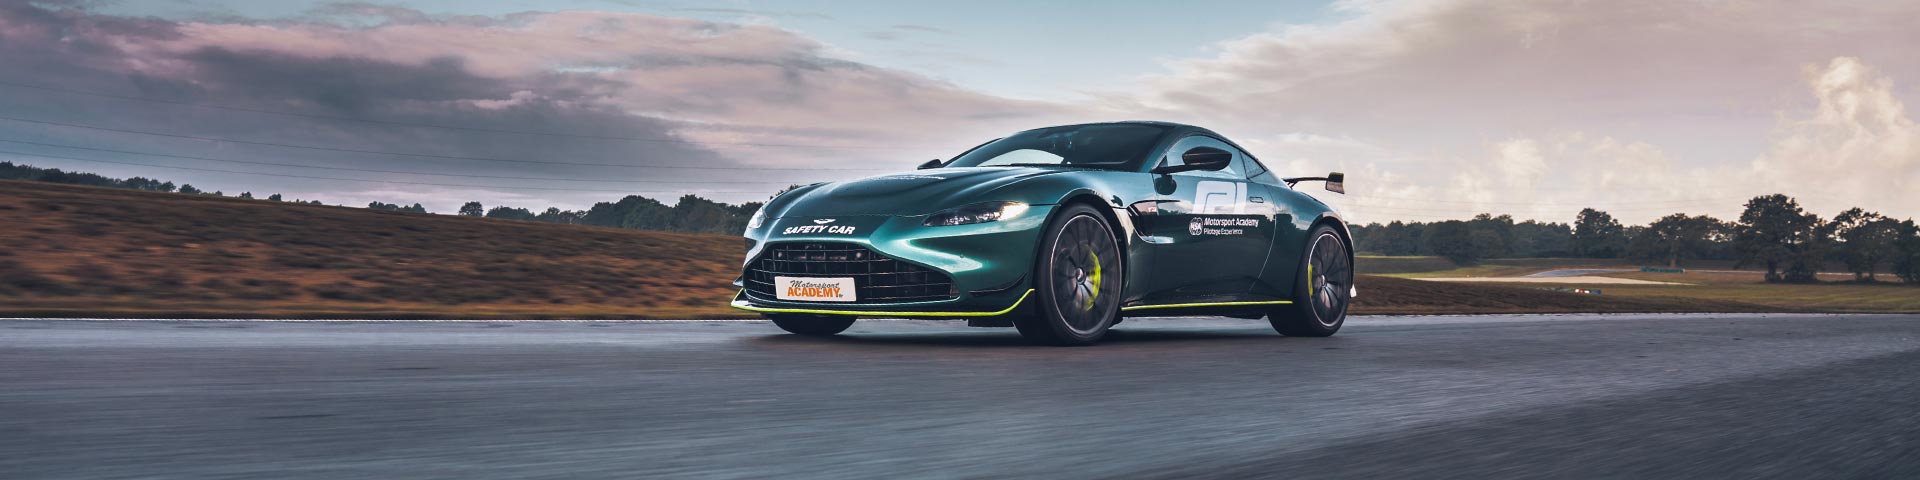  Aston Martin V8 Vantage F1 Edition